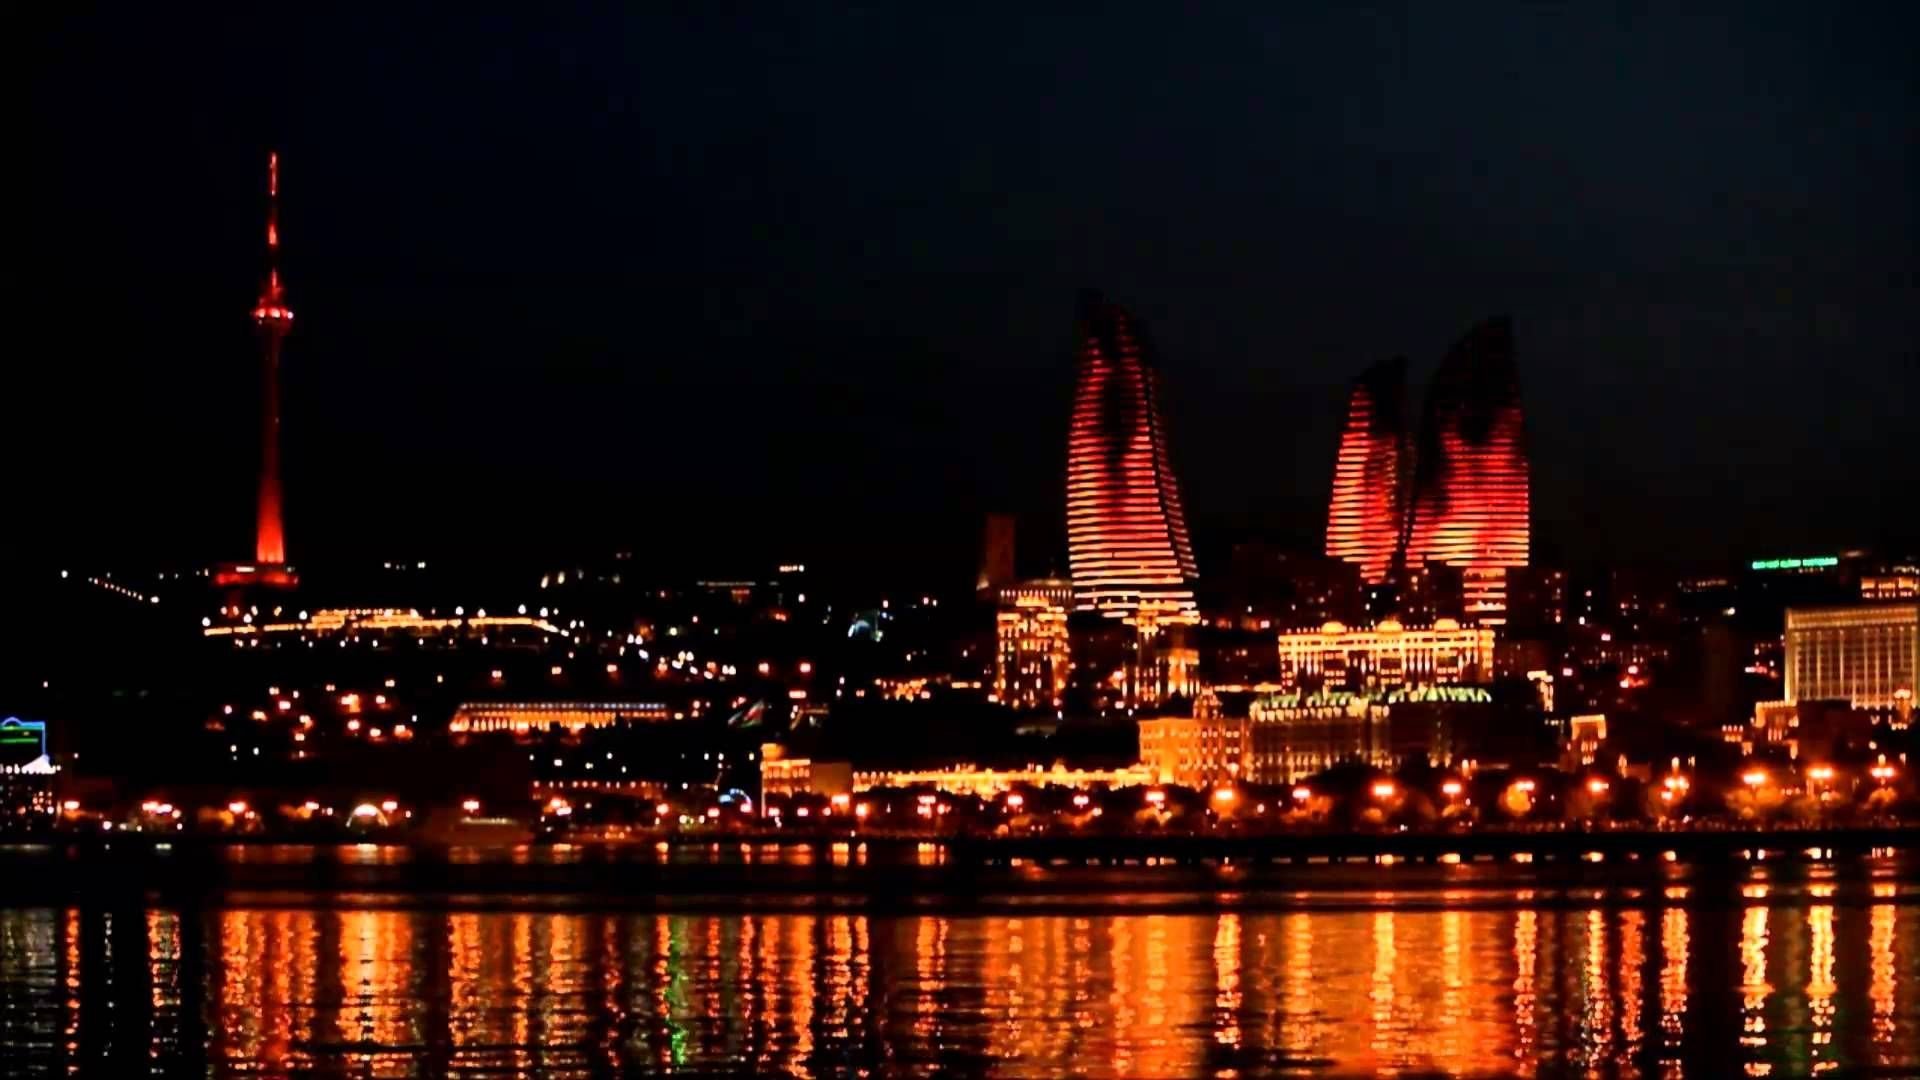 Нижний азербайджан. Пламенные башни Азербайджан. Пламенеющие башни Баку. Пылающие башни Баку. Пламенные башни Flame Towers.